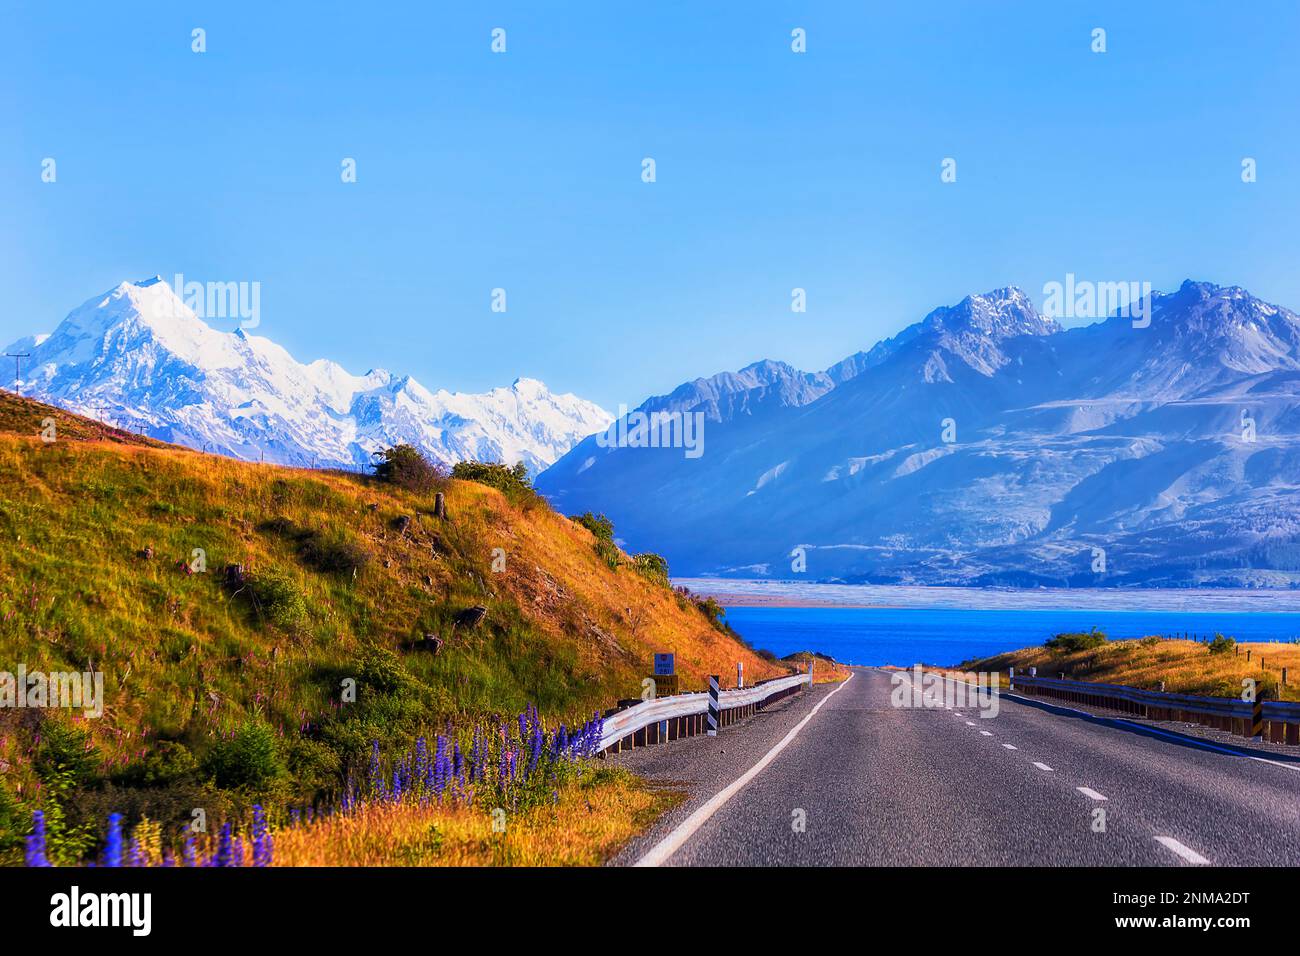 Walbach am Pukaki Lake am Highway 80 zum Mt. Cook Aoraki auf der Südinsel Neuseelands. Stockfoto